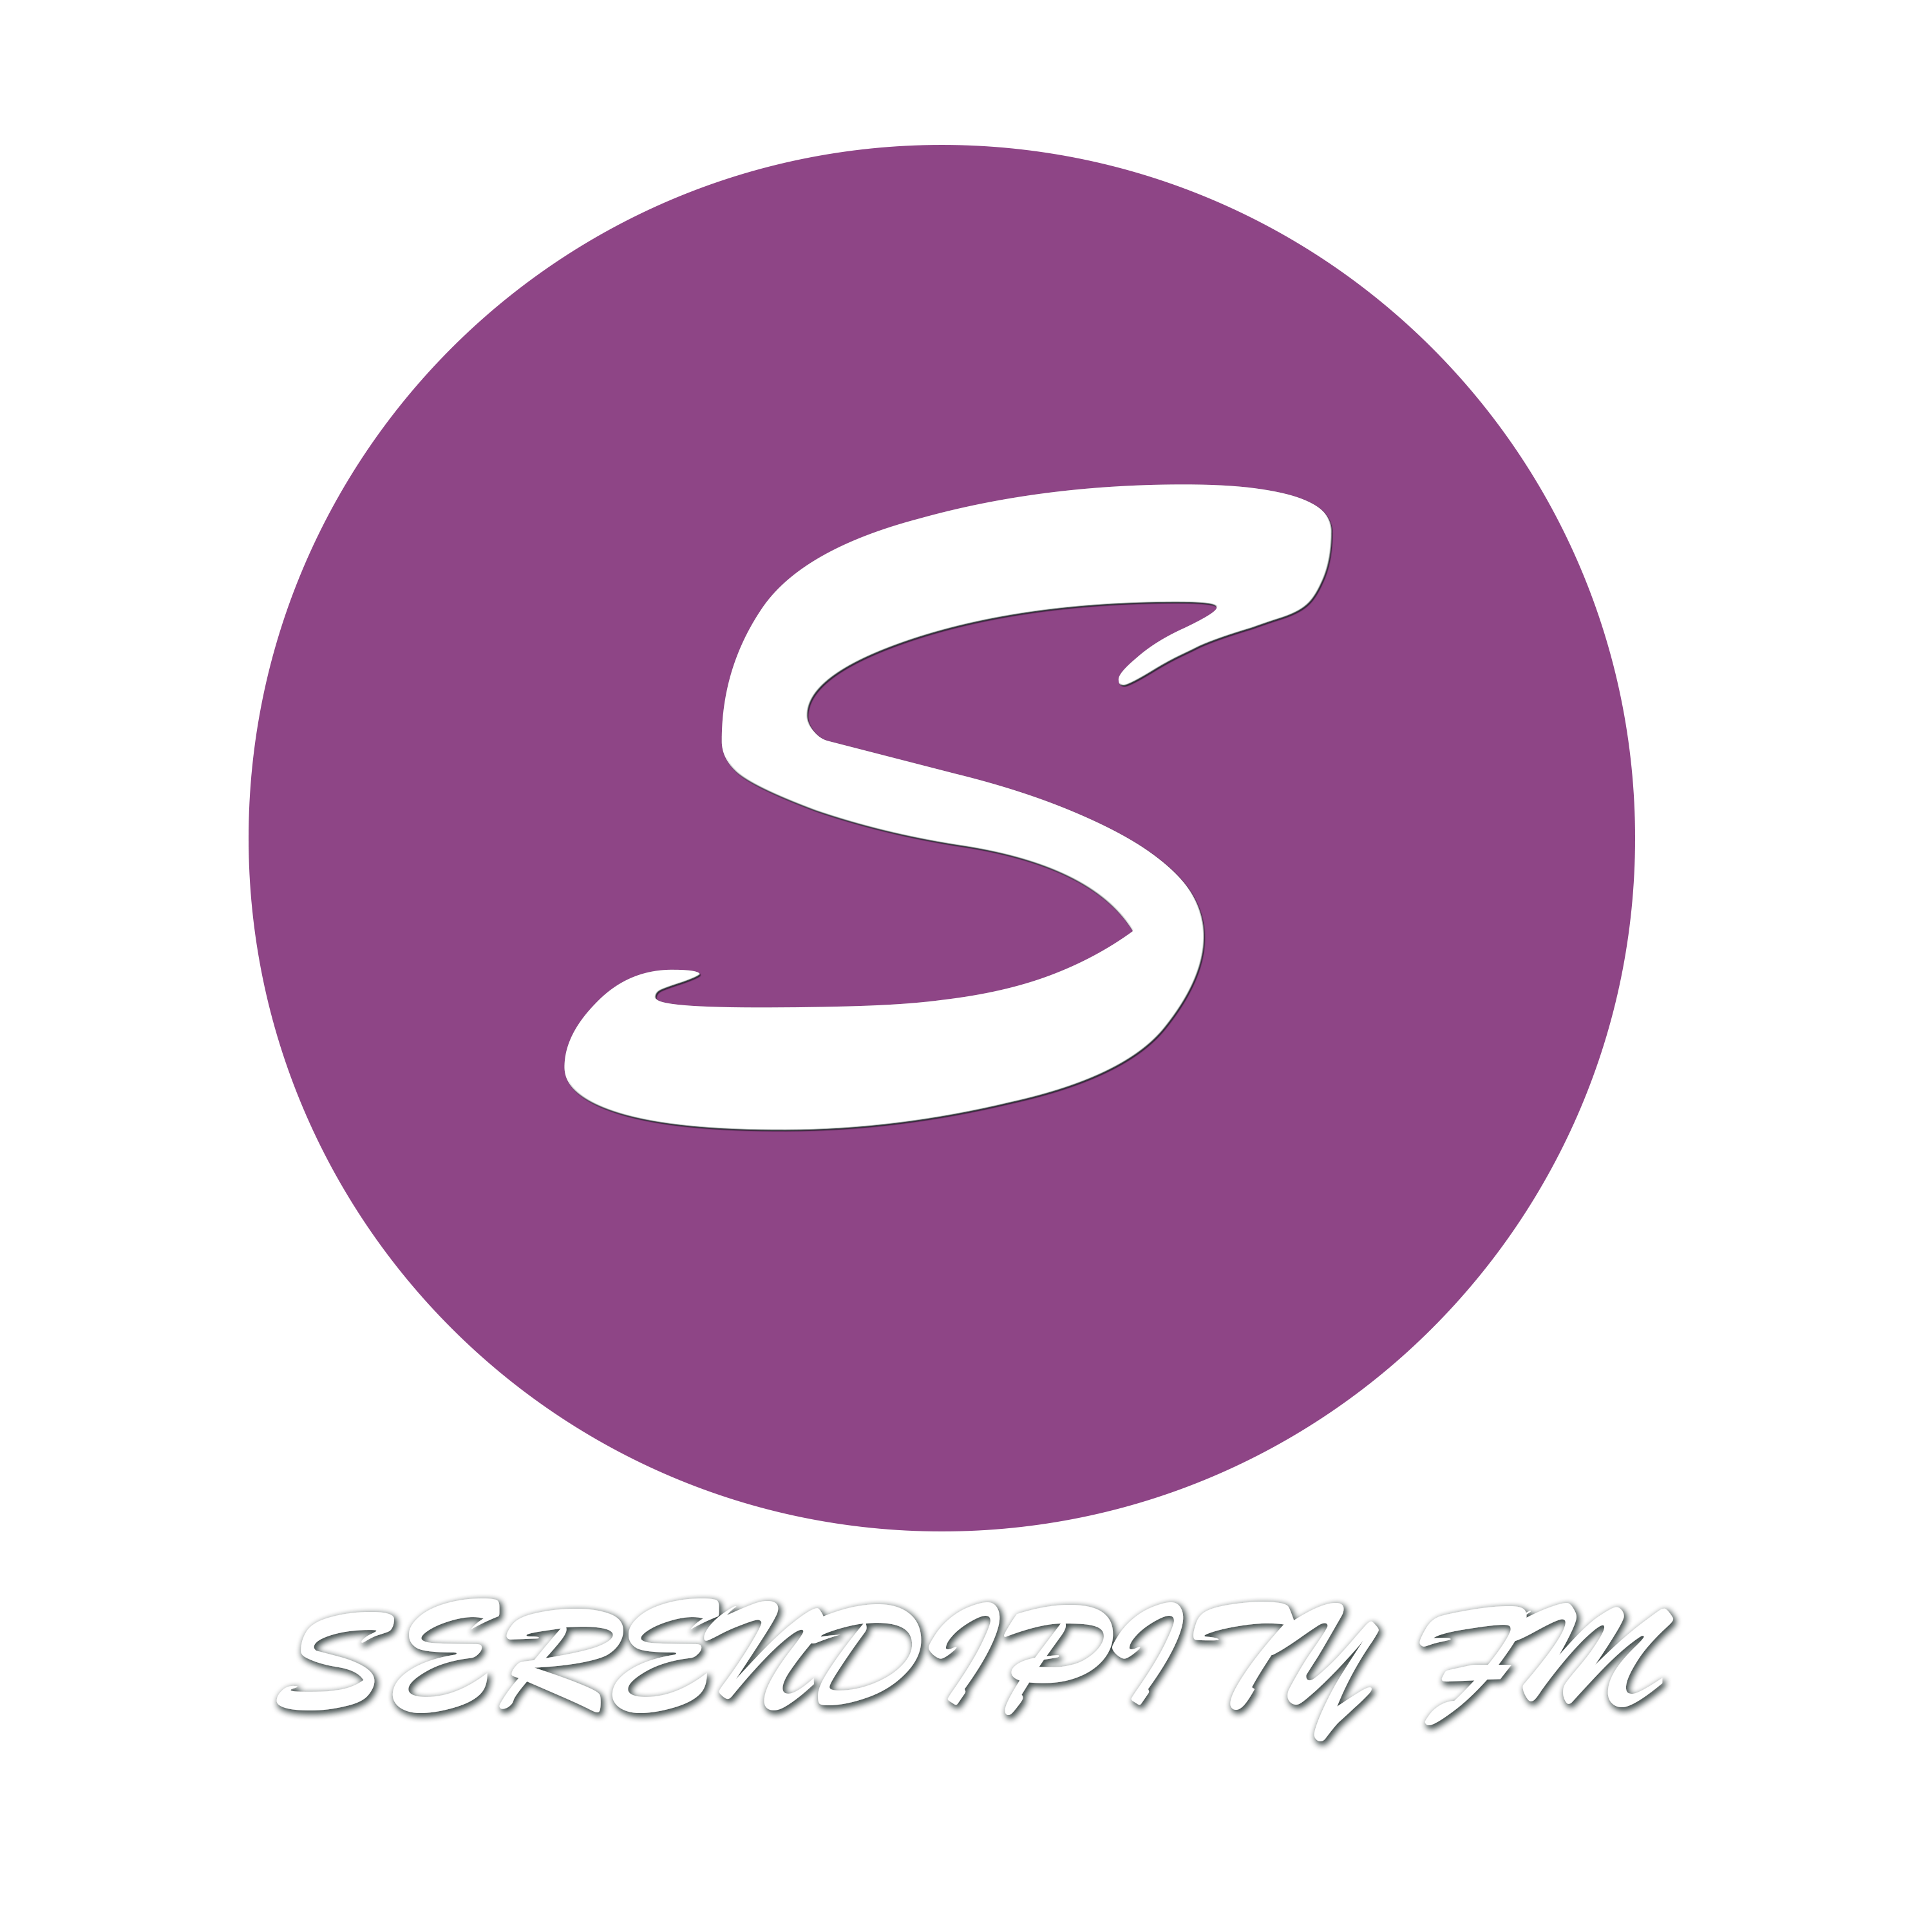 Serendipity FM Logo